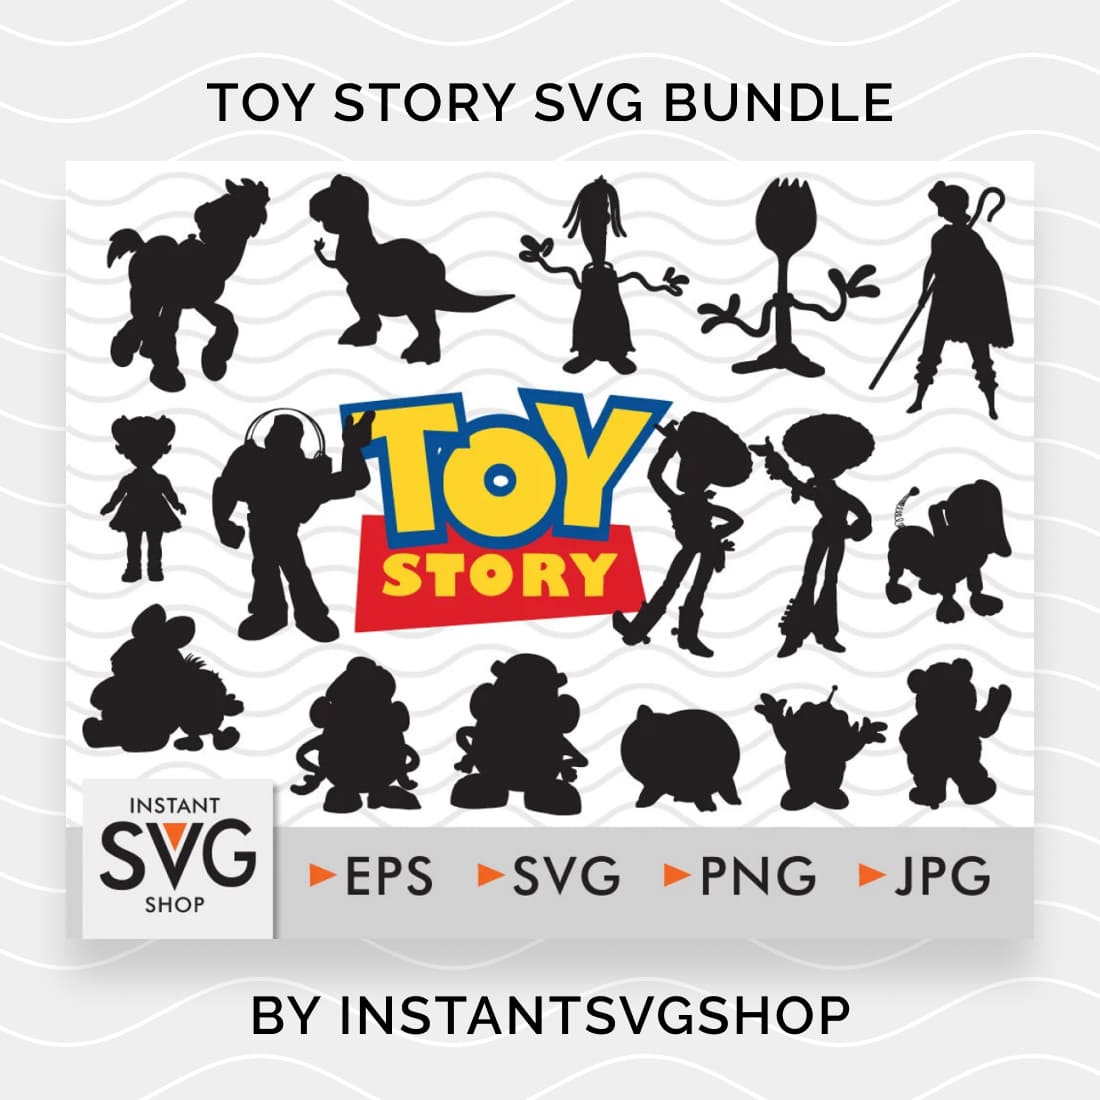 17 Toy Story SVG Bundle.